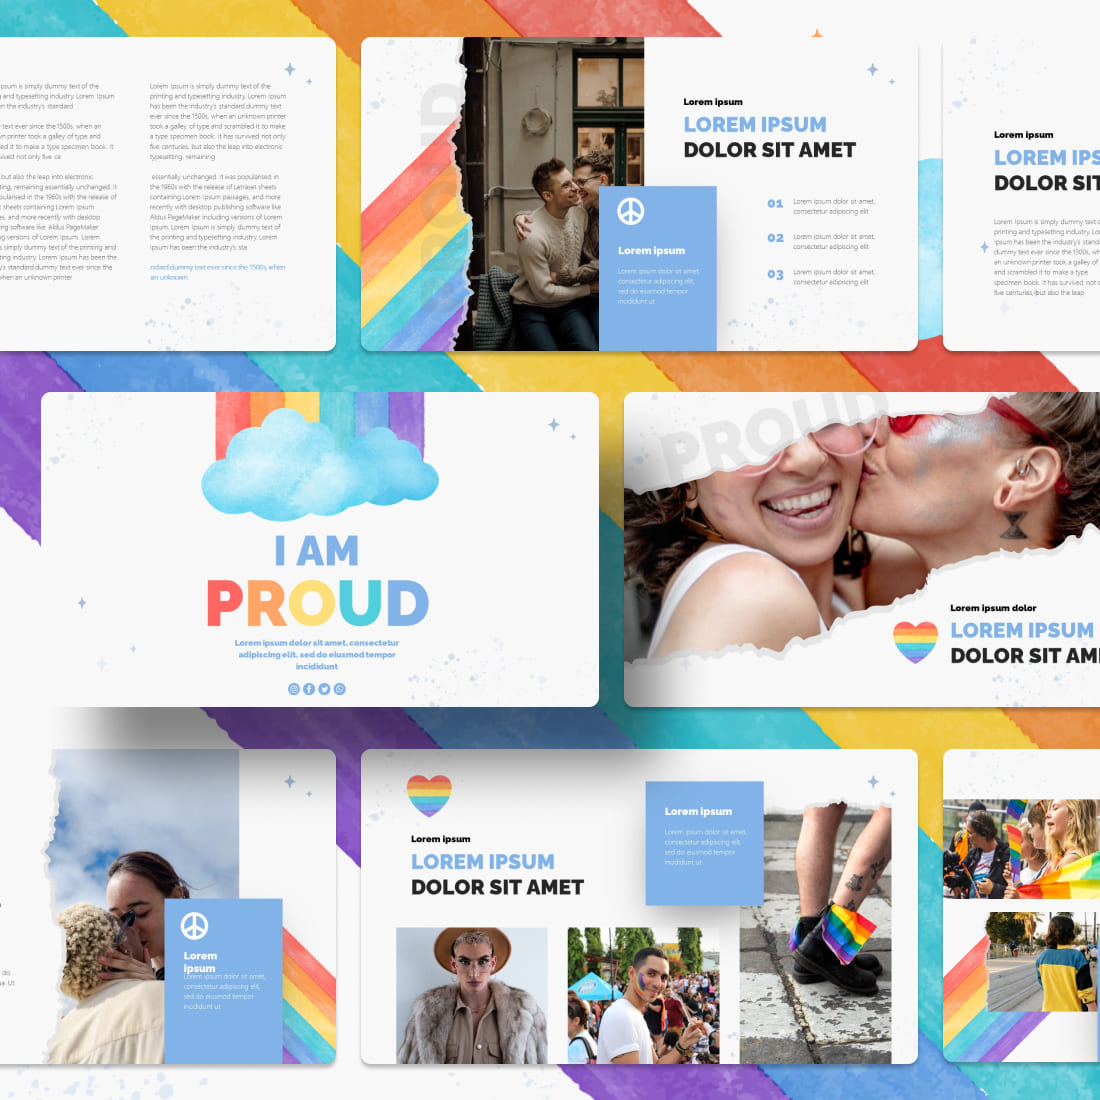 I'm Proud LGBTQ Google Slides Theme cover.